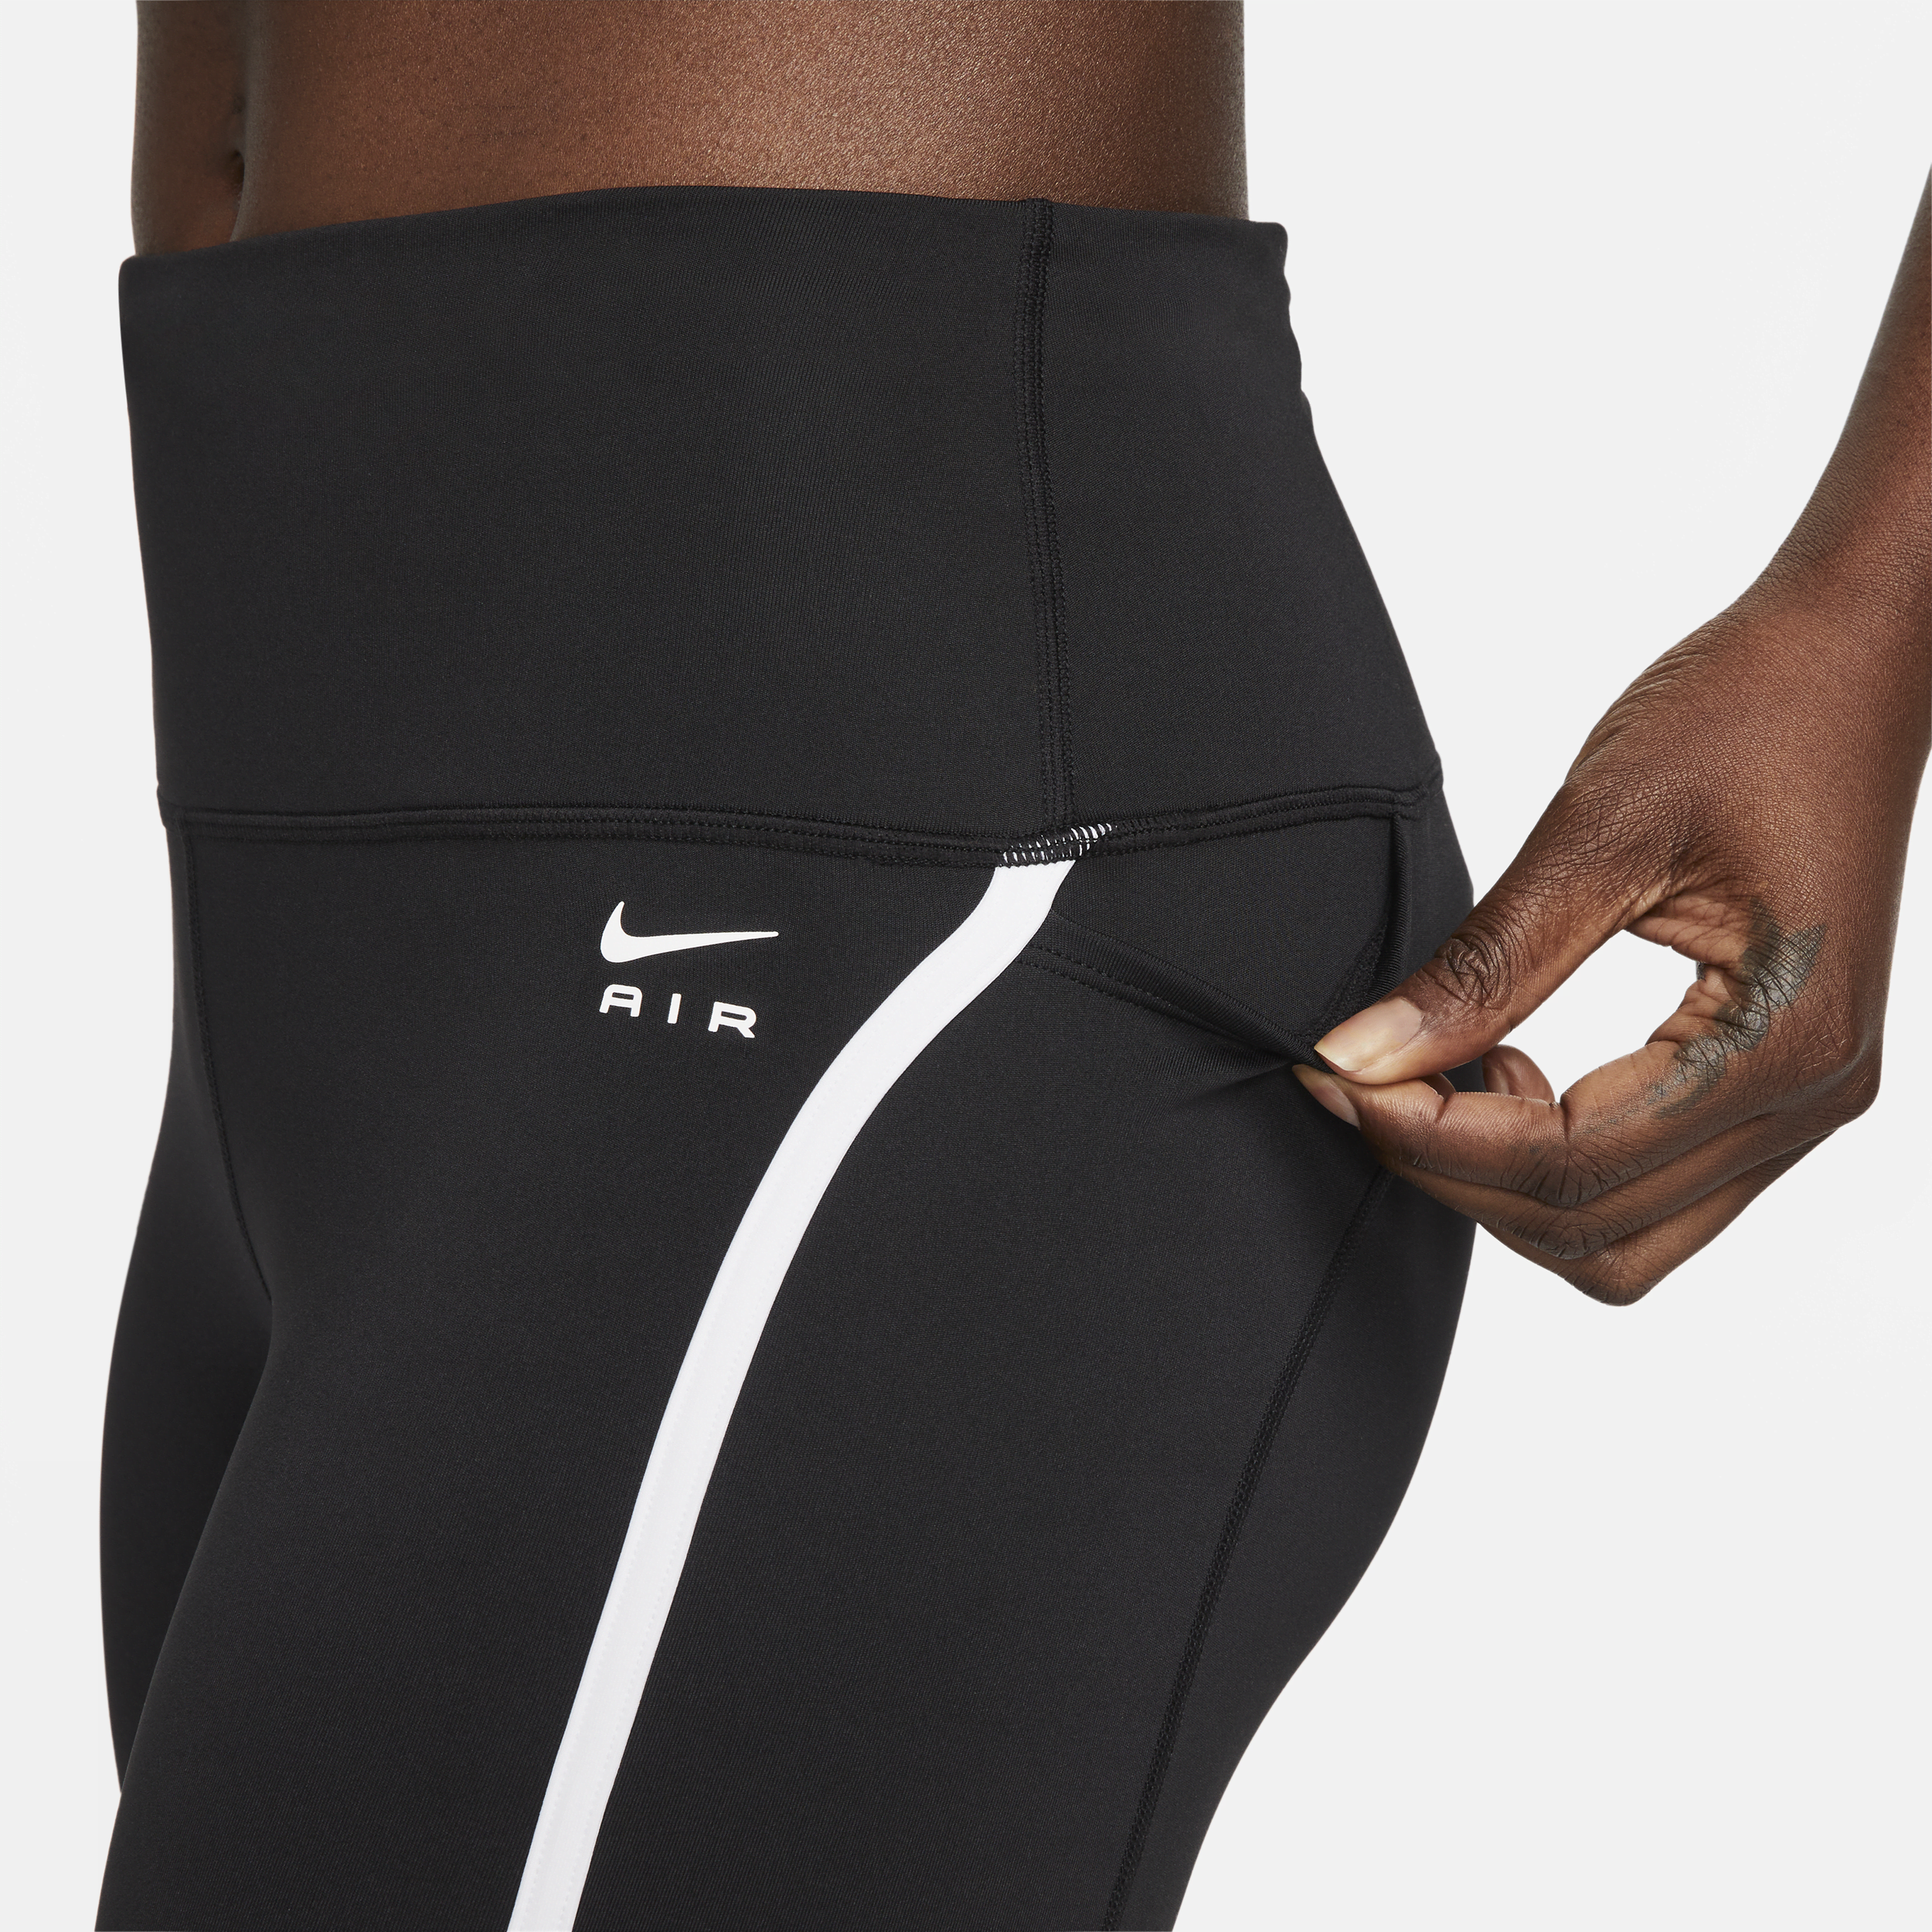 Nike Go Women's Firm-Support Mid-Rise Full-Length Leggings Pockets Size S,  M, L | eBay